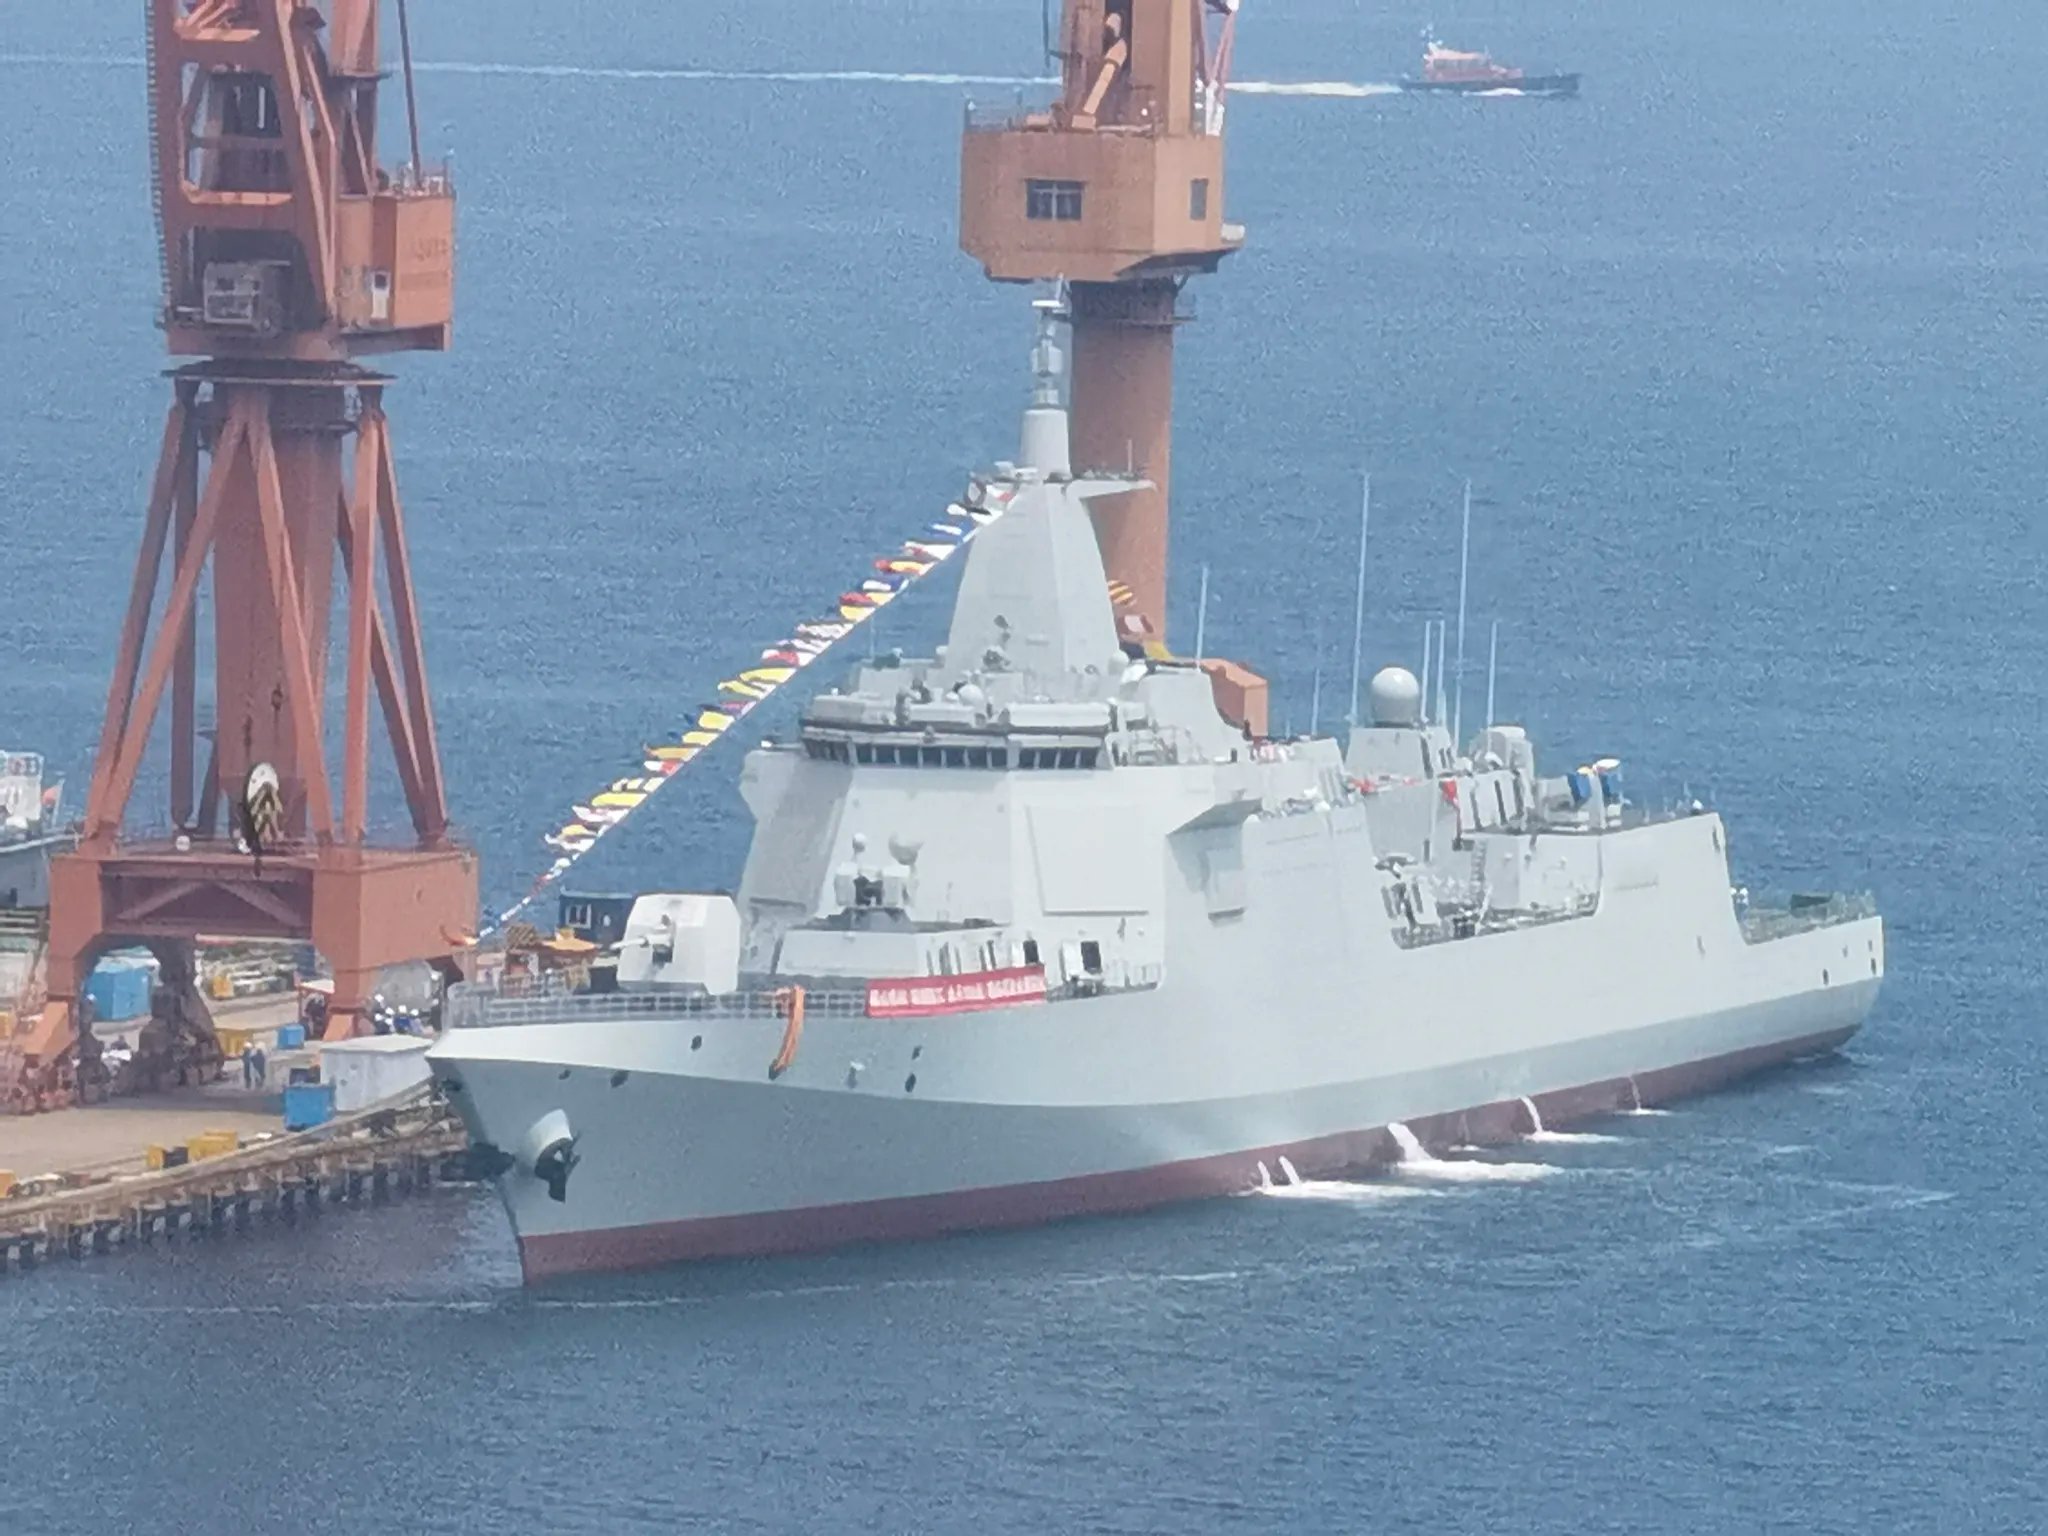 彩云香江 on X: "PLA Navy's eighth Type 055 destroyer Xianyang will soon be commissioned. 🇨🇳 https://t.co/sOISLnmDY4" / X